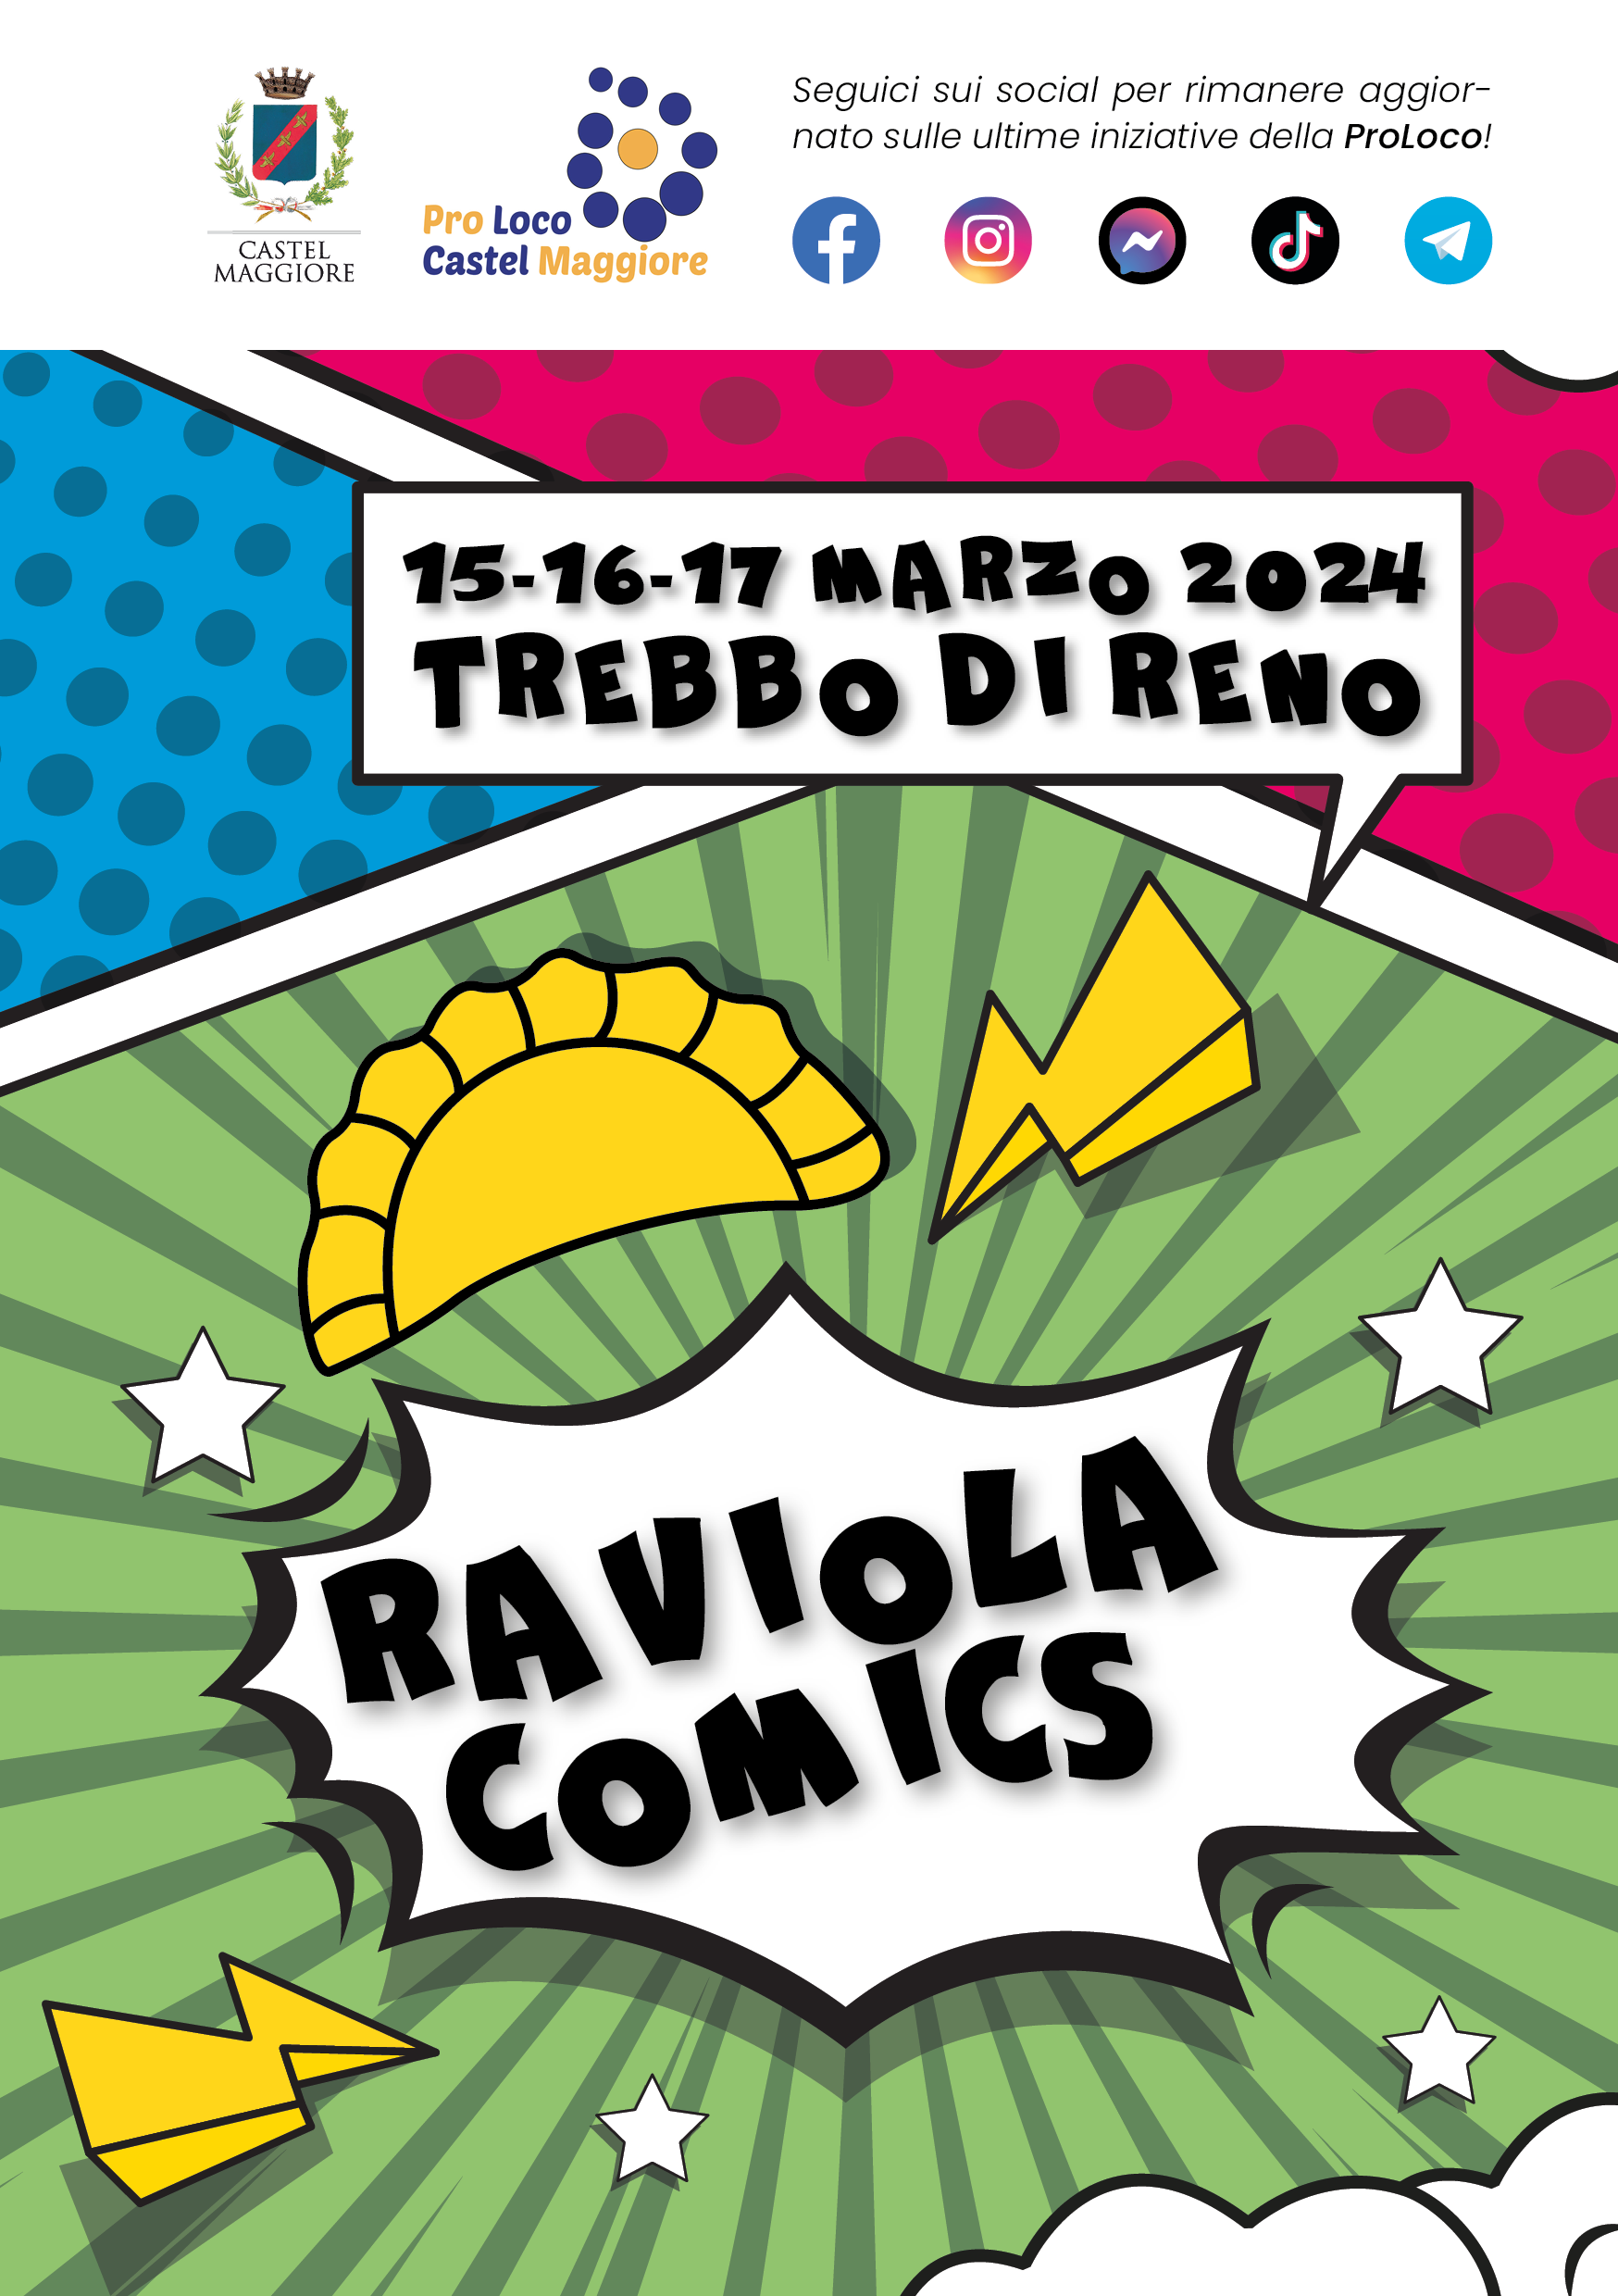 La terza edizione di Raviola Comics dal 15 al 17 marzo 2024